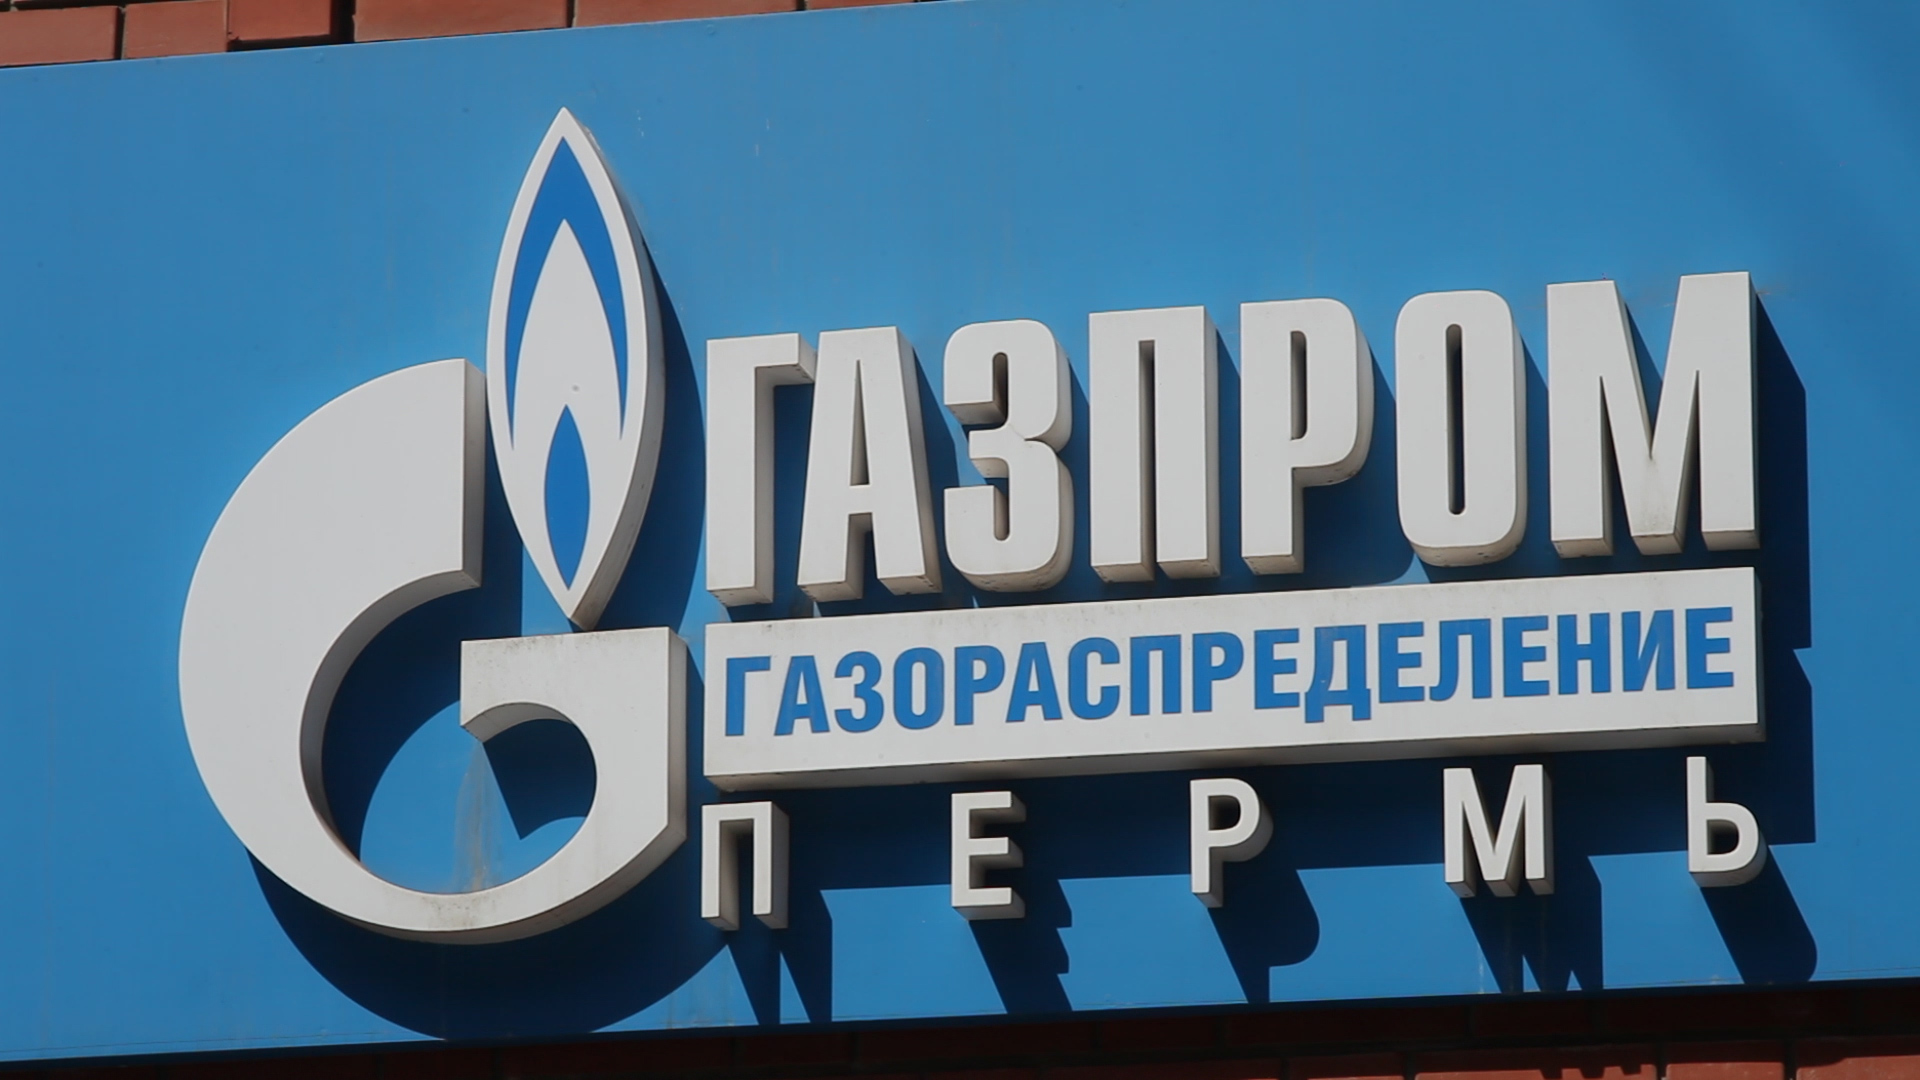 АО Газпром газораспределение